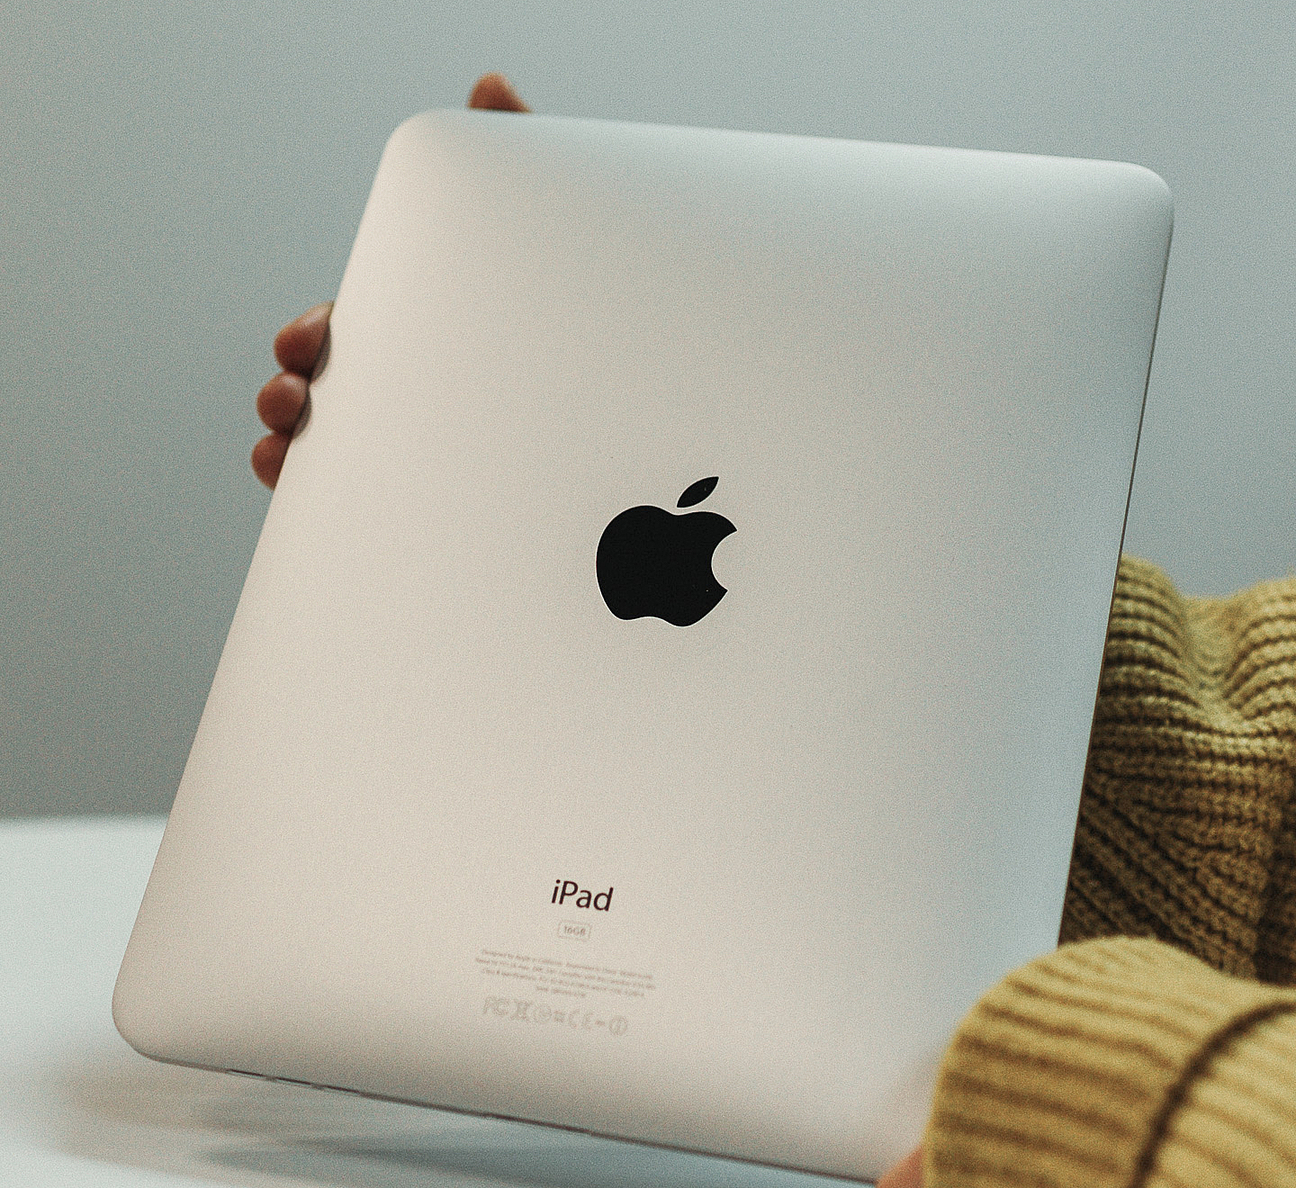 ein iPad wird in zwei Händen gehalten, auf der silbernen Rückseite ist das schwarze Apple Logo zu sehen